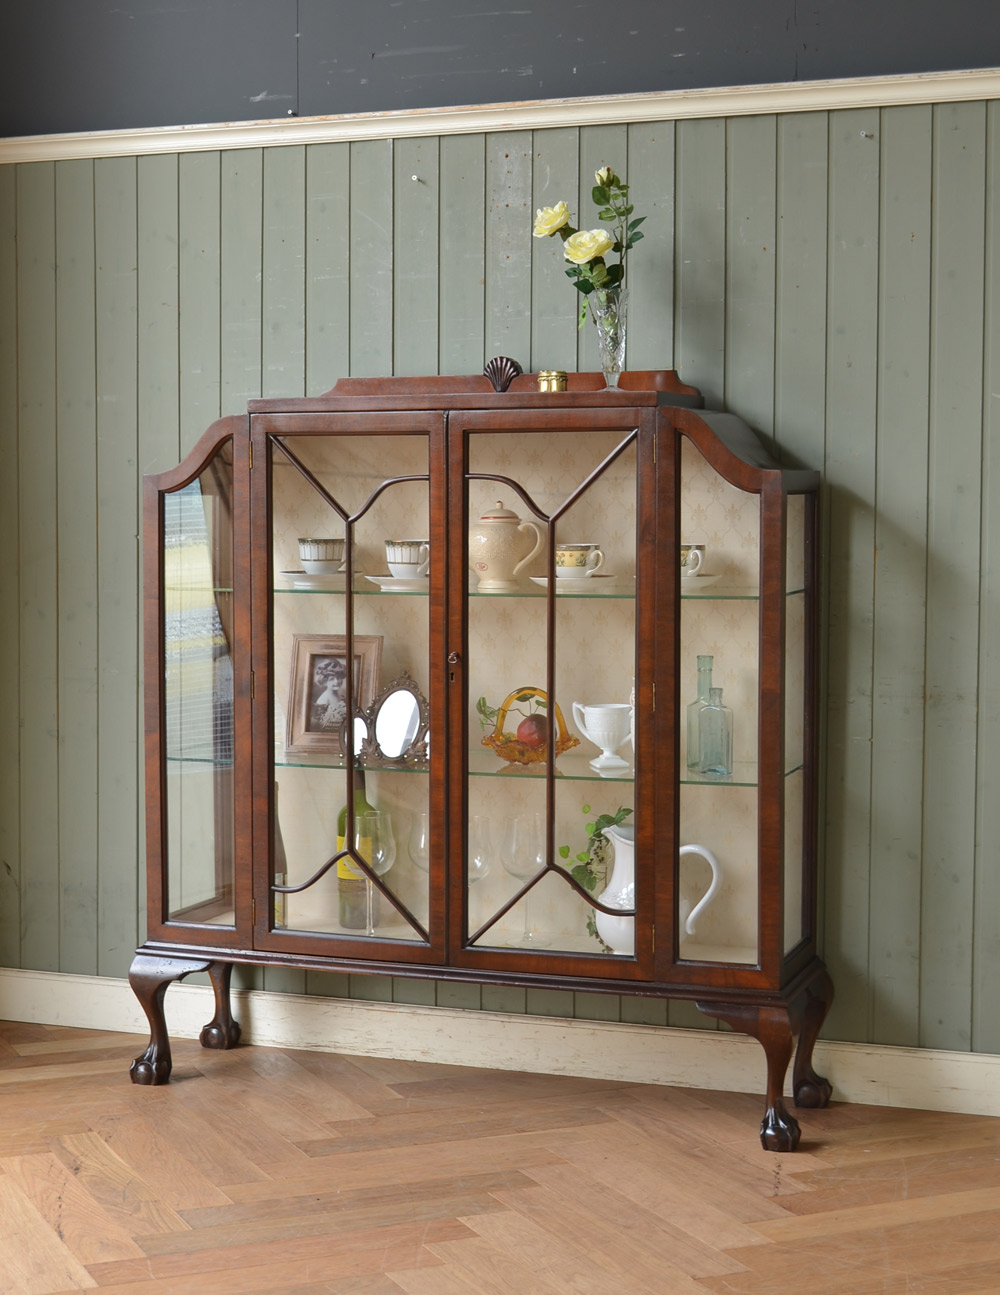 アンティークの英国スタイルの家具、マホガニー材のガラスキャビネット (q-583-f)